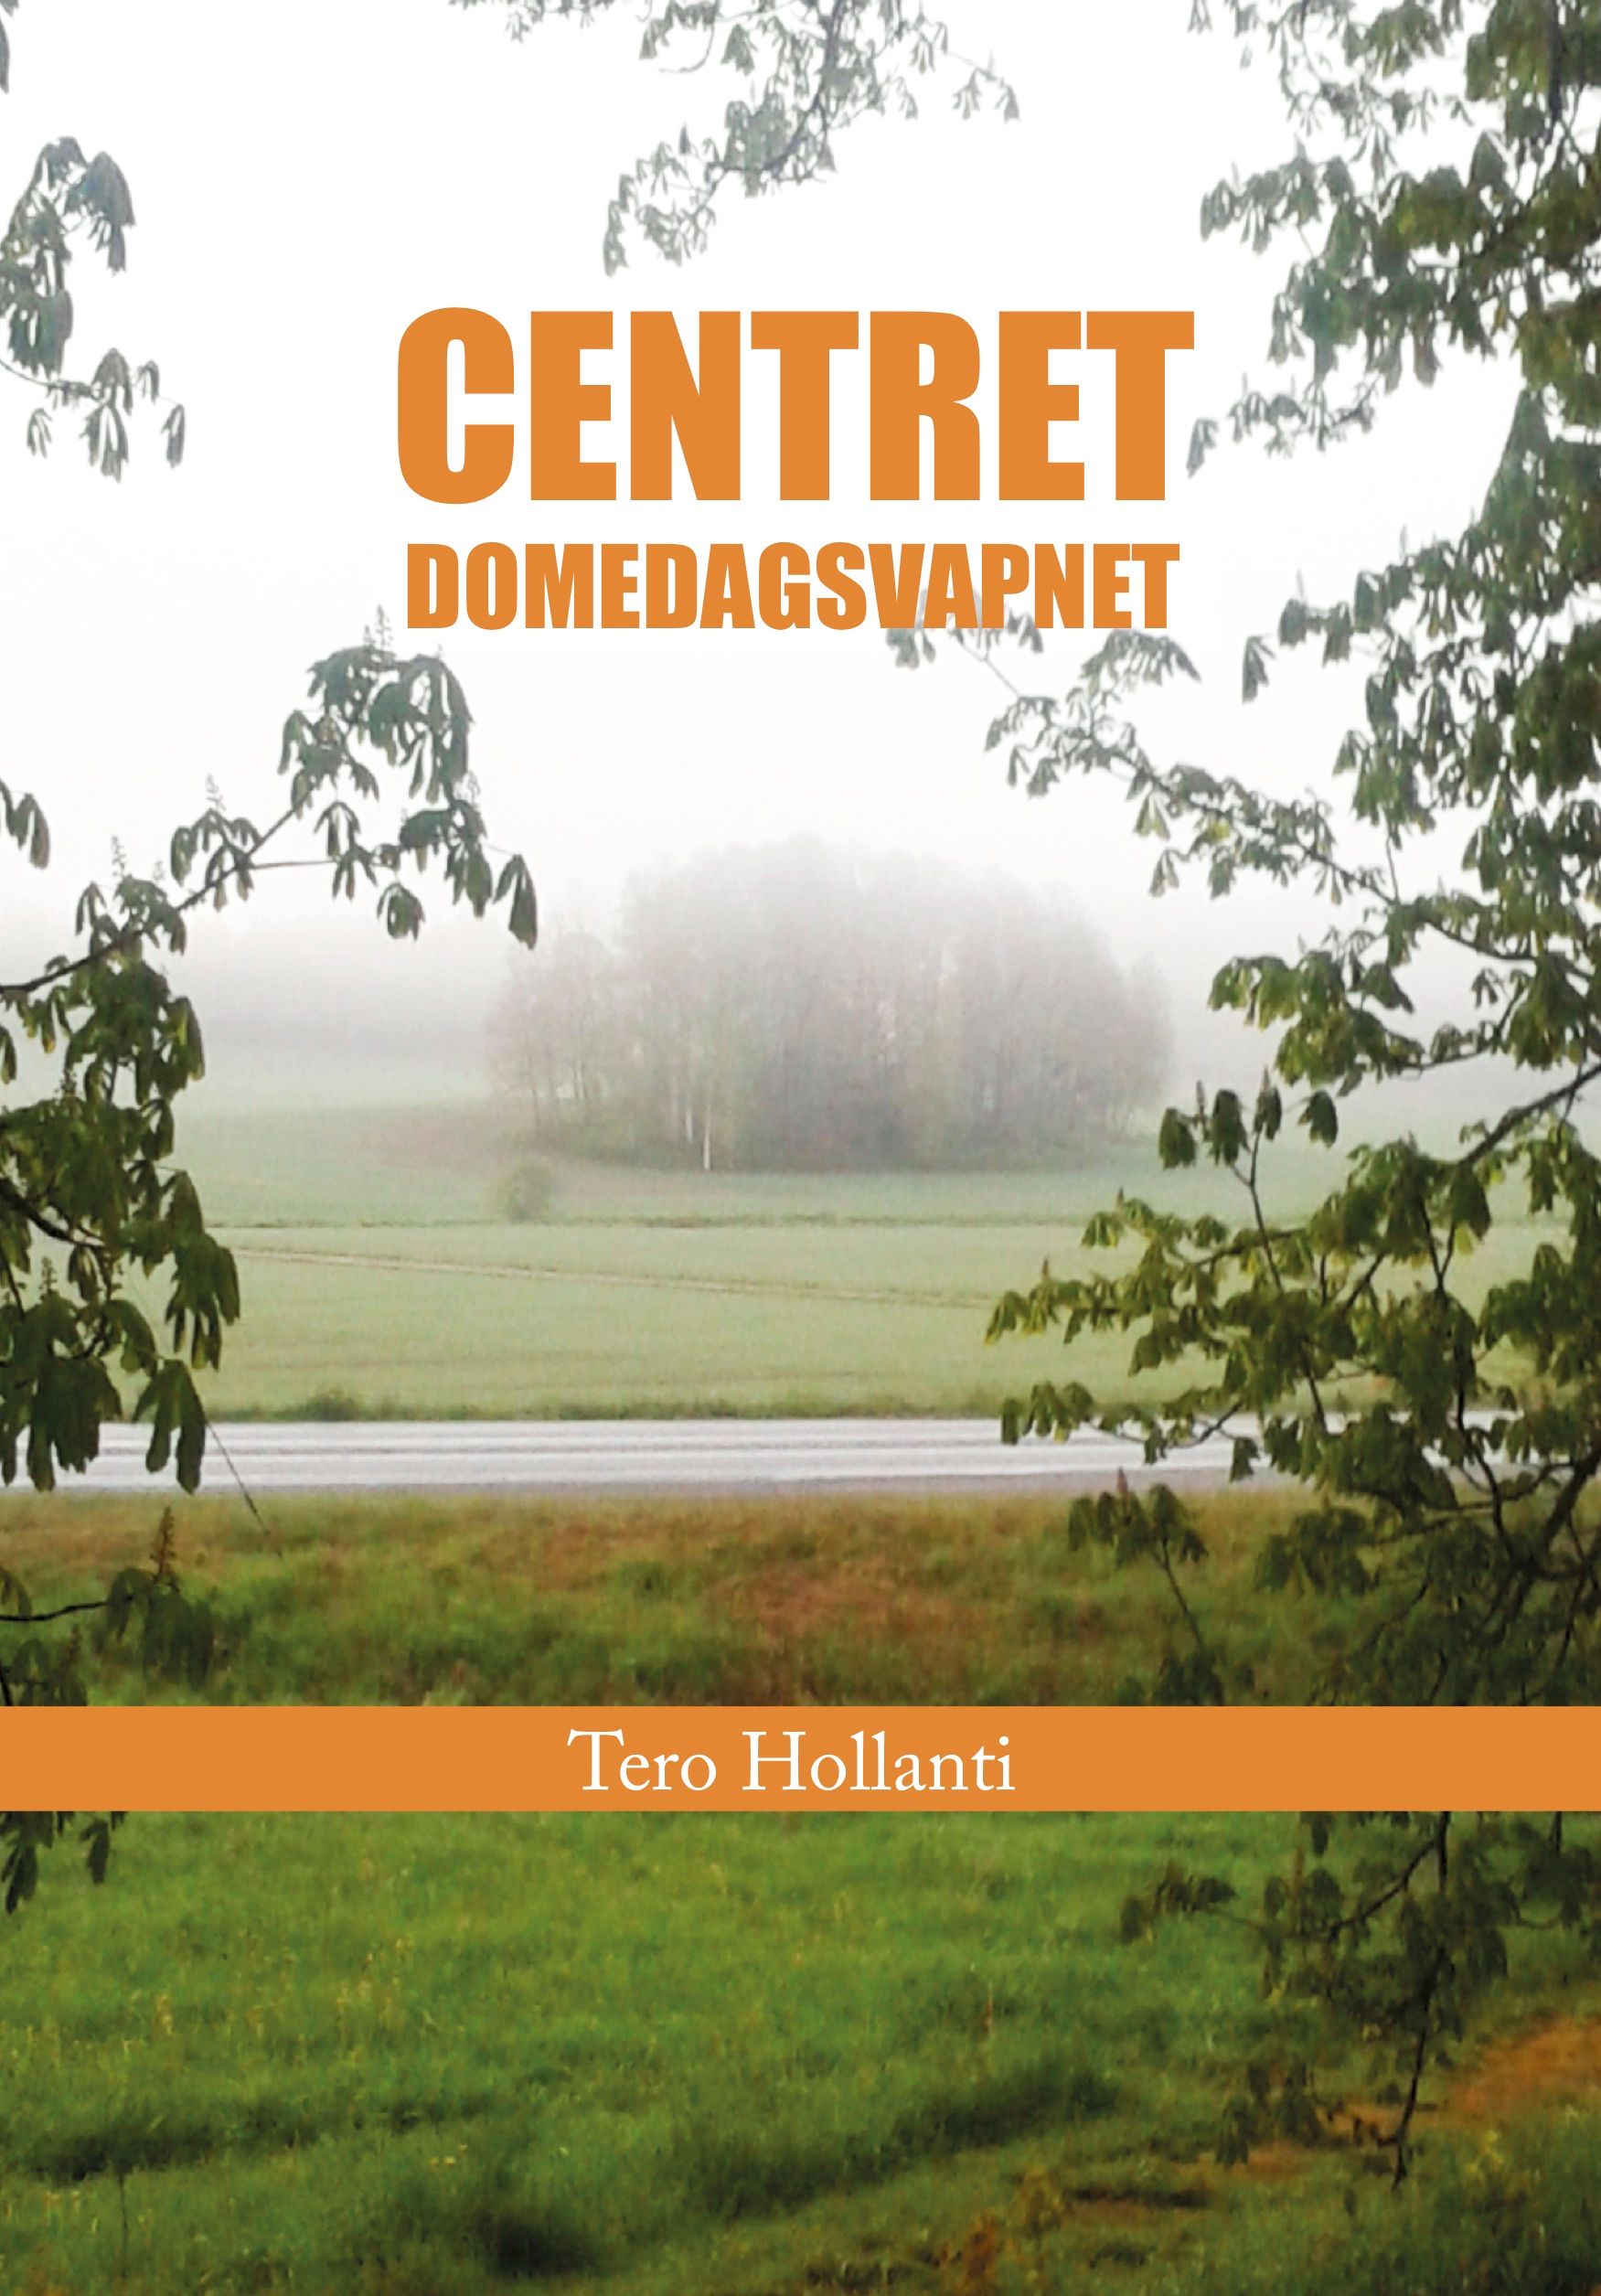 Centret Domedagsvapnet, e-bok av Tero Hollanti